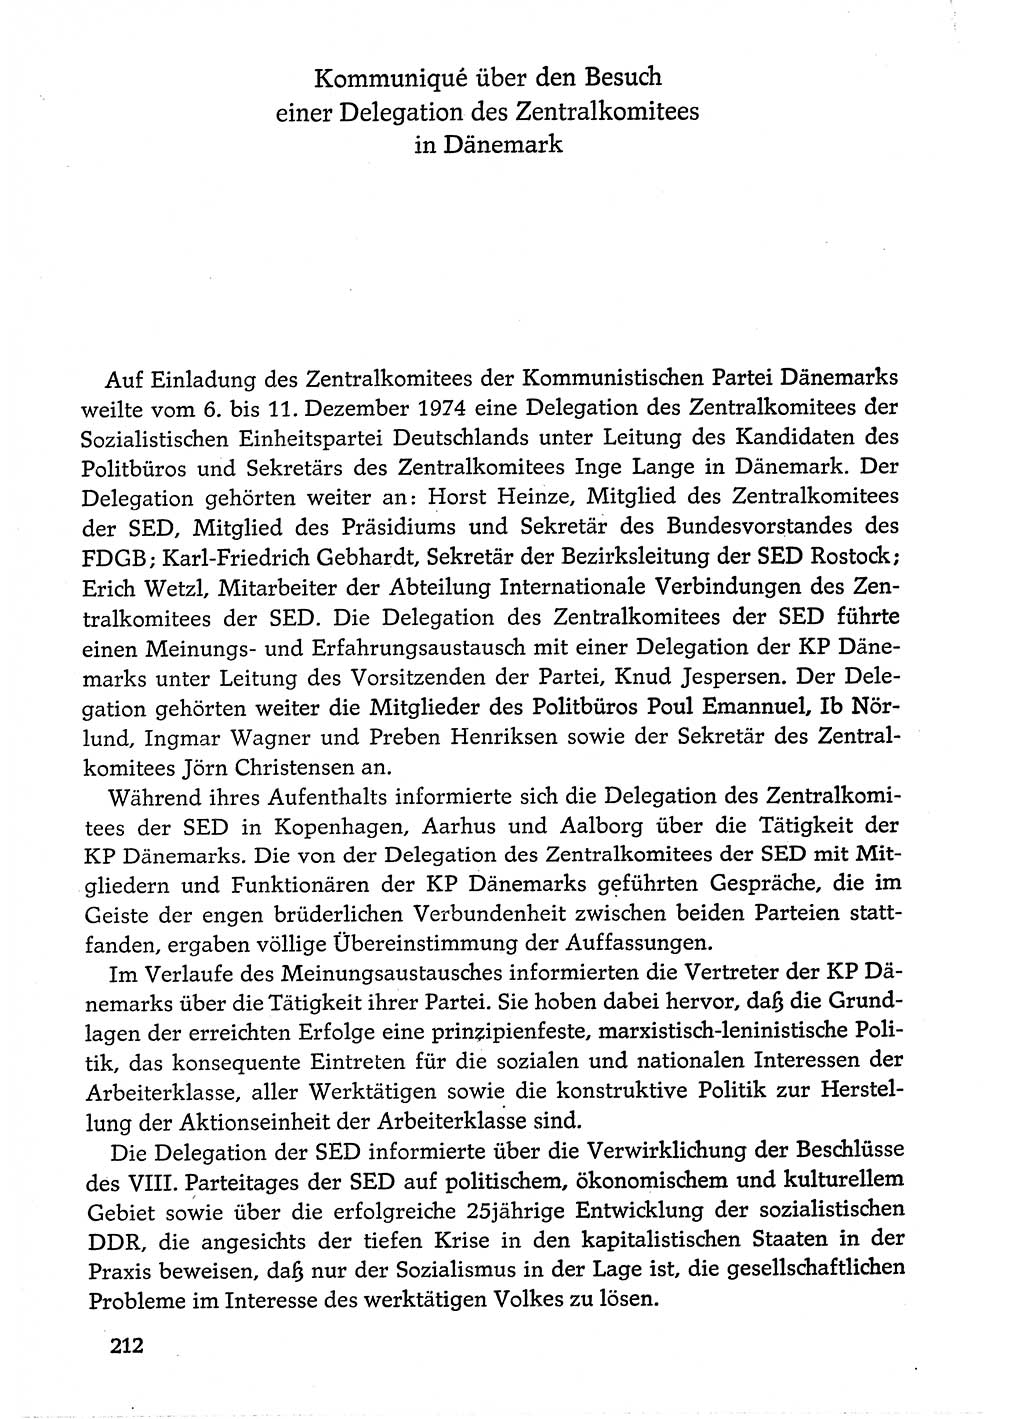 Dokumente der Sozialistischen Einheitspartei Deutschlands (SED) [Deutsche Demokratische Republik (DDR)] 1974-1975, Seite 212 (Dok. SED DDR 1978, Bd. ⅩⅤ, S. 212)